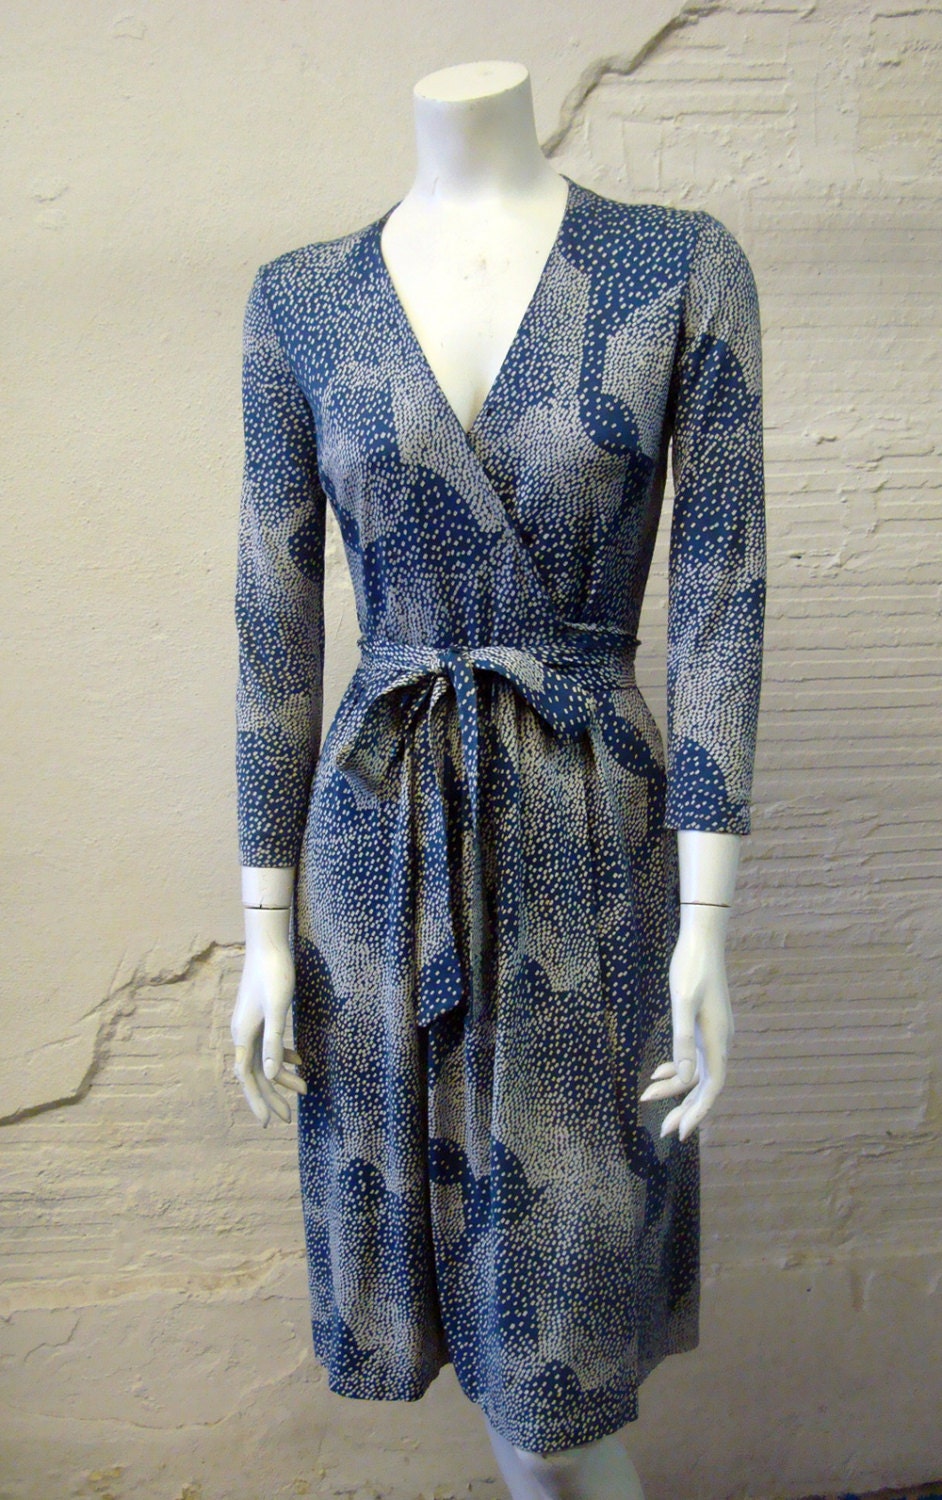 Diane Von Furstenberg Dress Vintage 1970s Iconic Blue Cotton